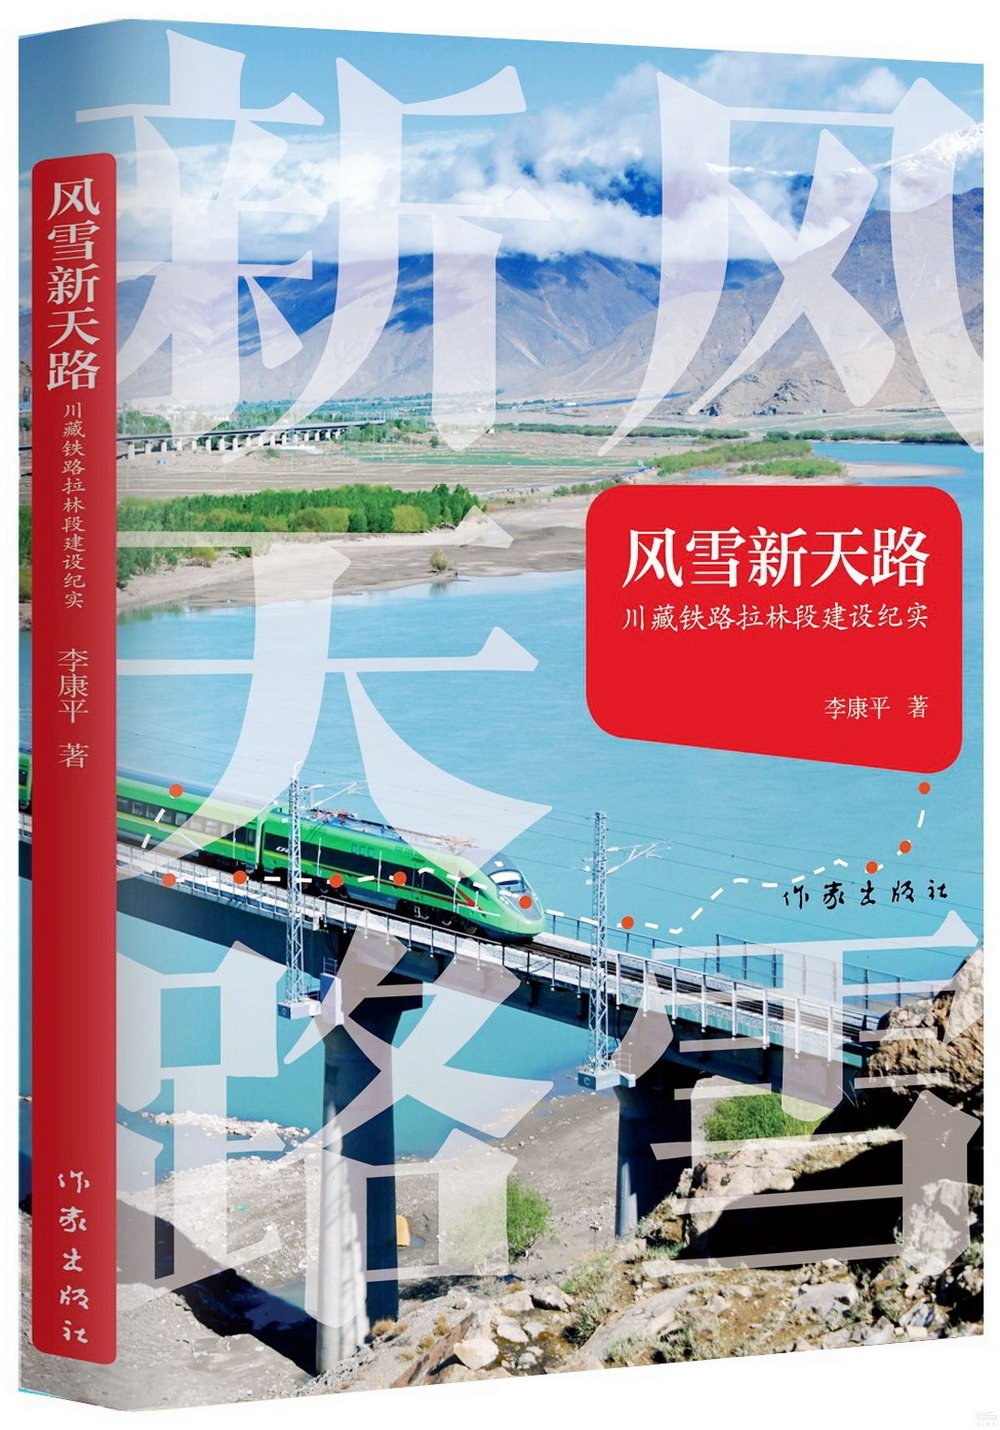 風雪新天路：川藏鐵路拉林段建設紀實